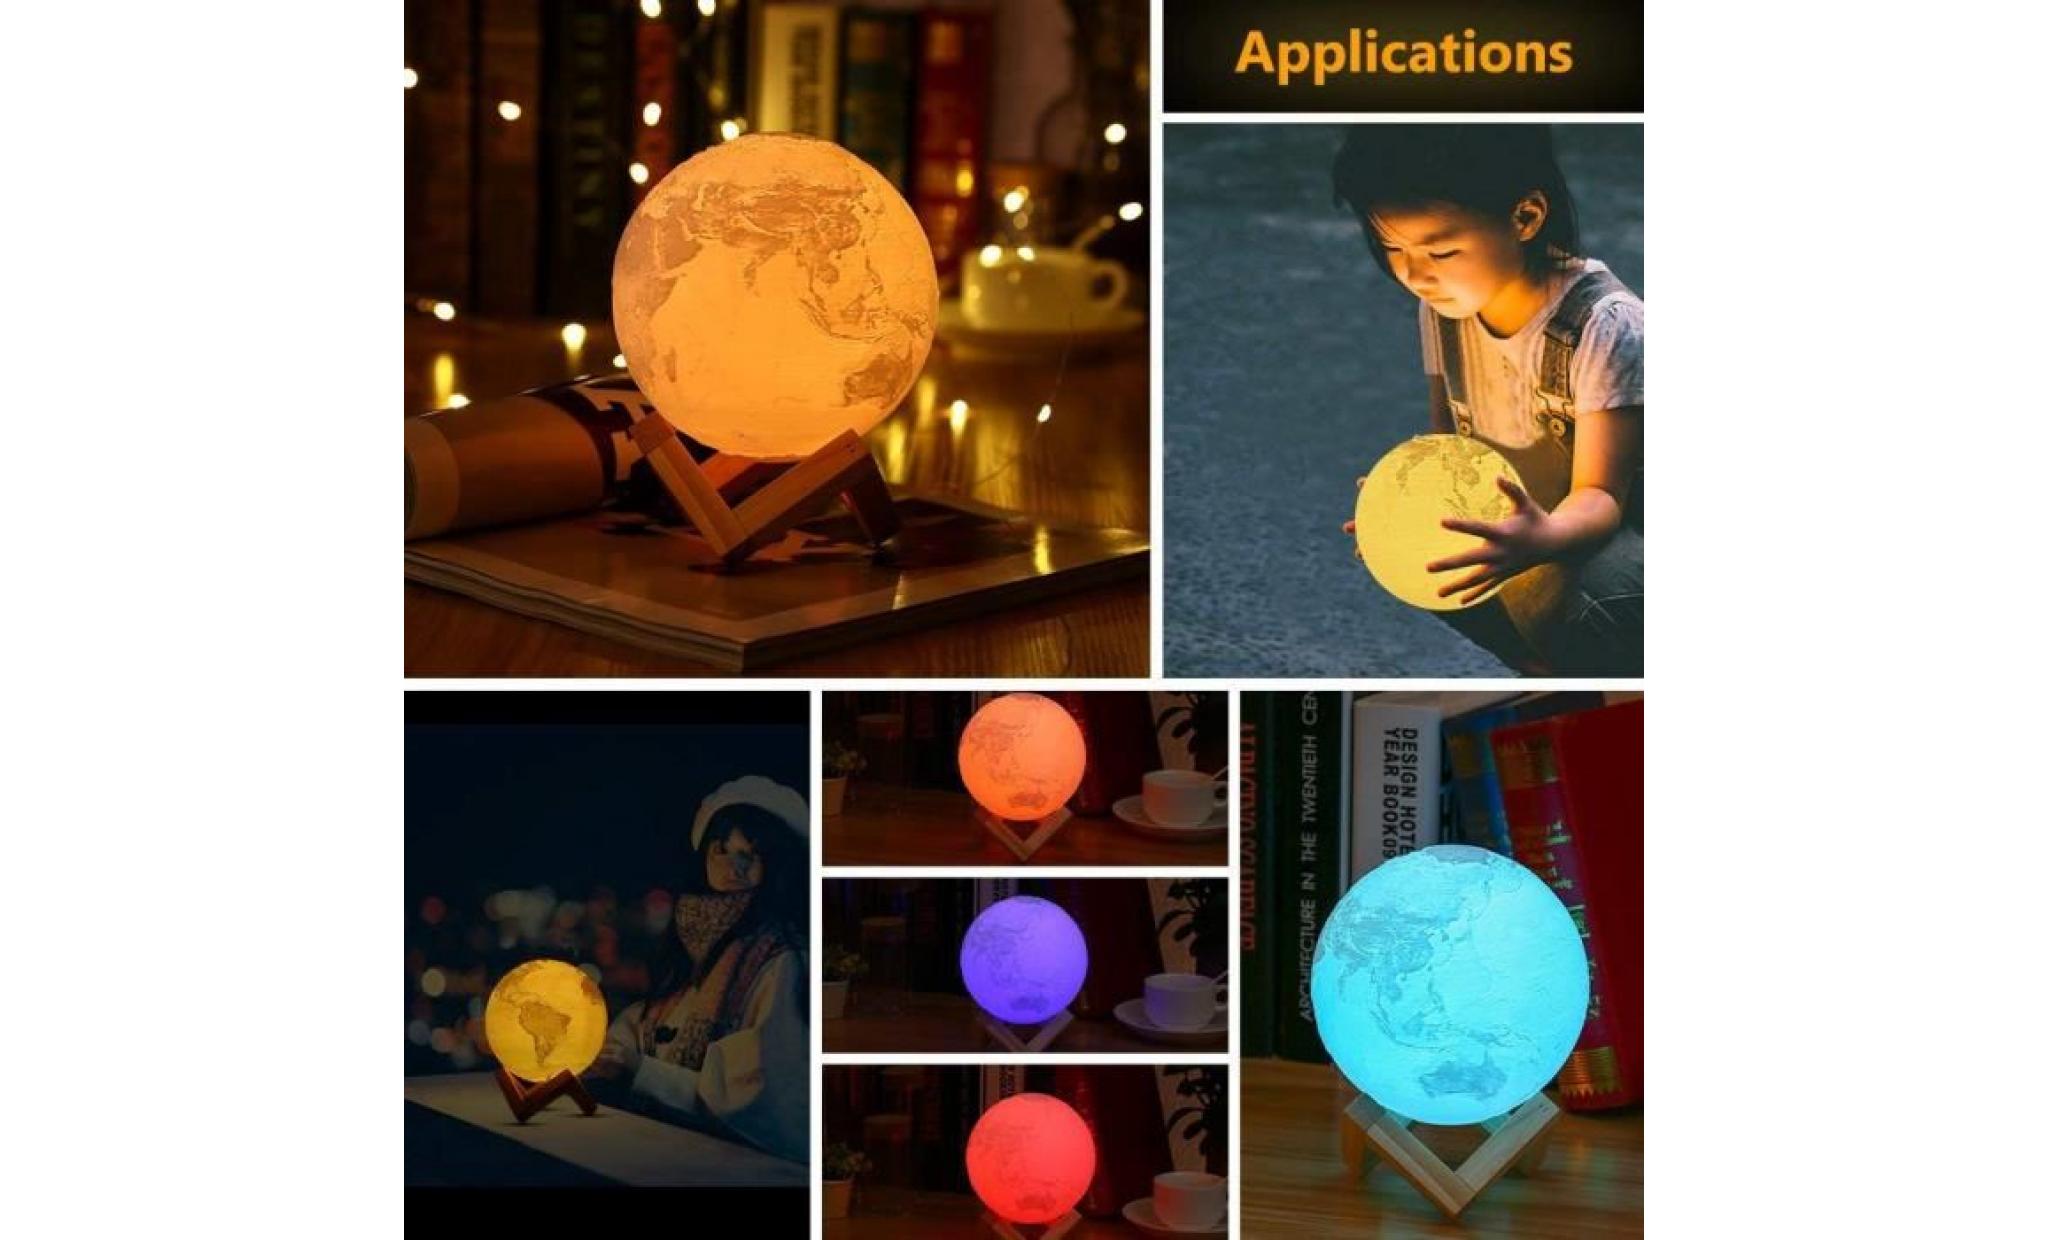 lampe 3d lampe globe terrestre inlife veilleuse rechargeable 16 couleurs,télécommande,lampe de chevet pour enfants,cadeau pas cher